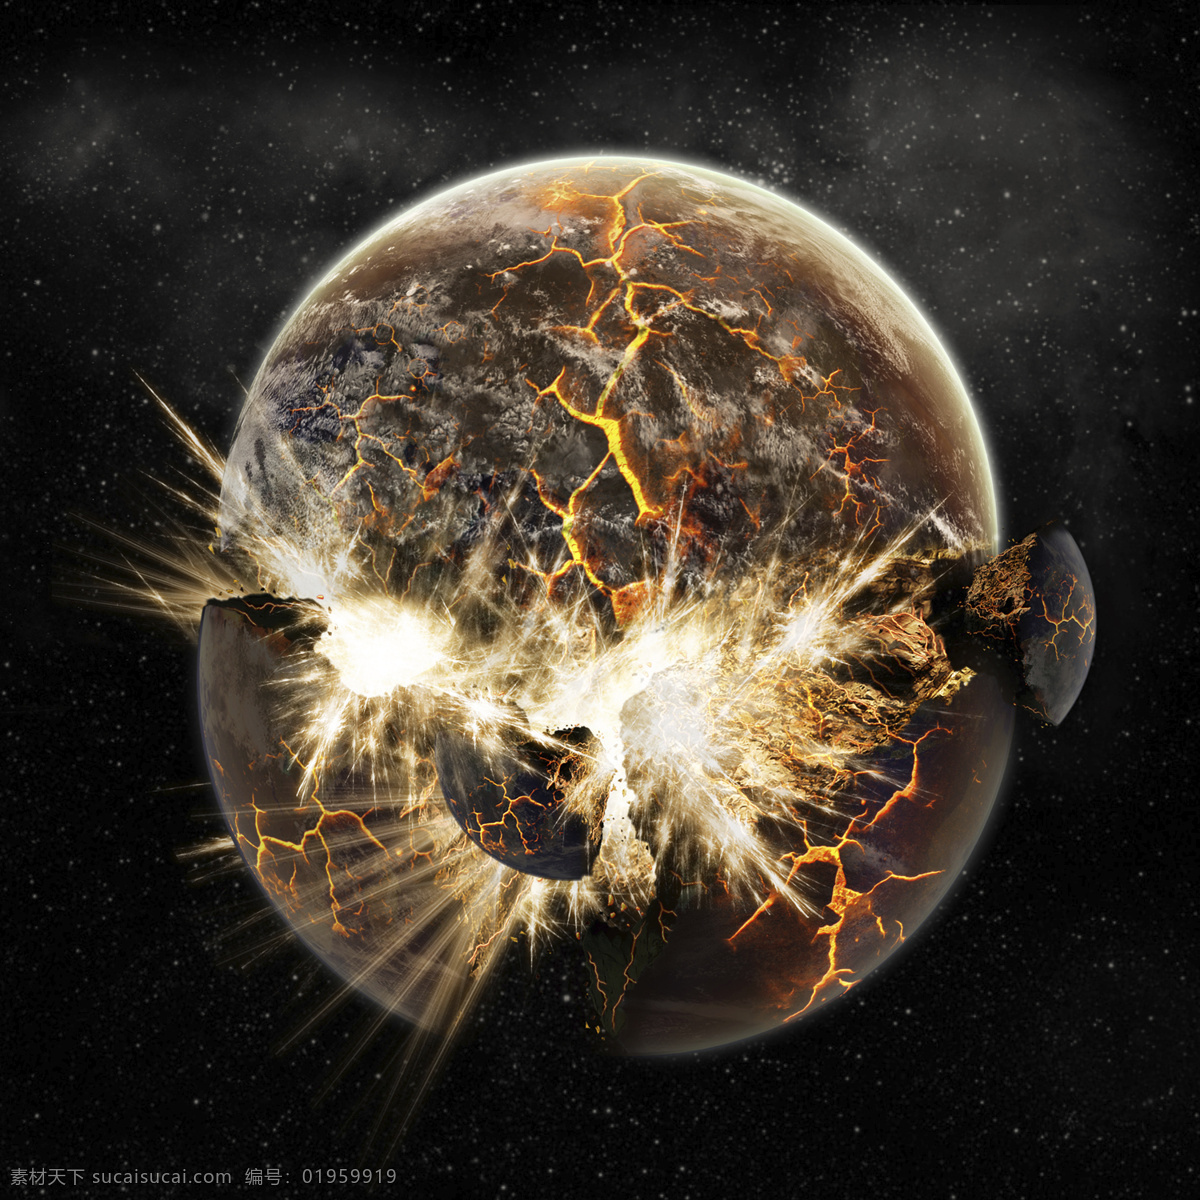 世界 末日 预言 图 末日预言 2012 世界末日 地球 宇宙 毁灭 灭亡 太空 太阳 环境保护 科幻 幻想 宇宙太空 环境家居